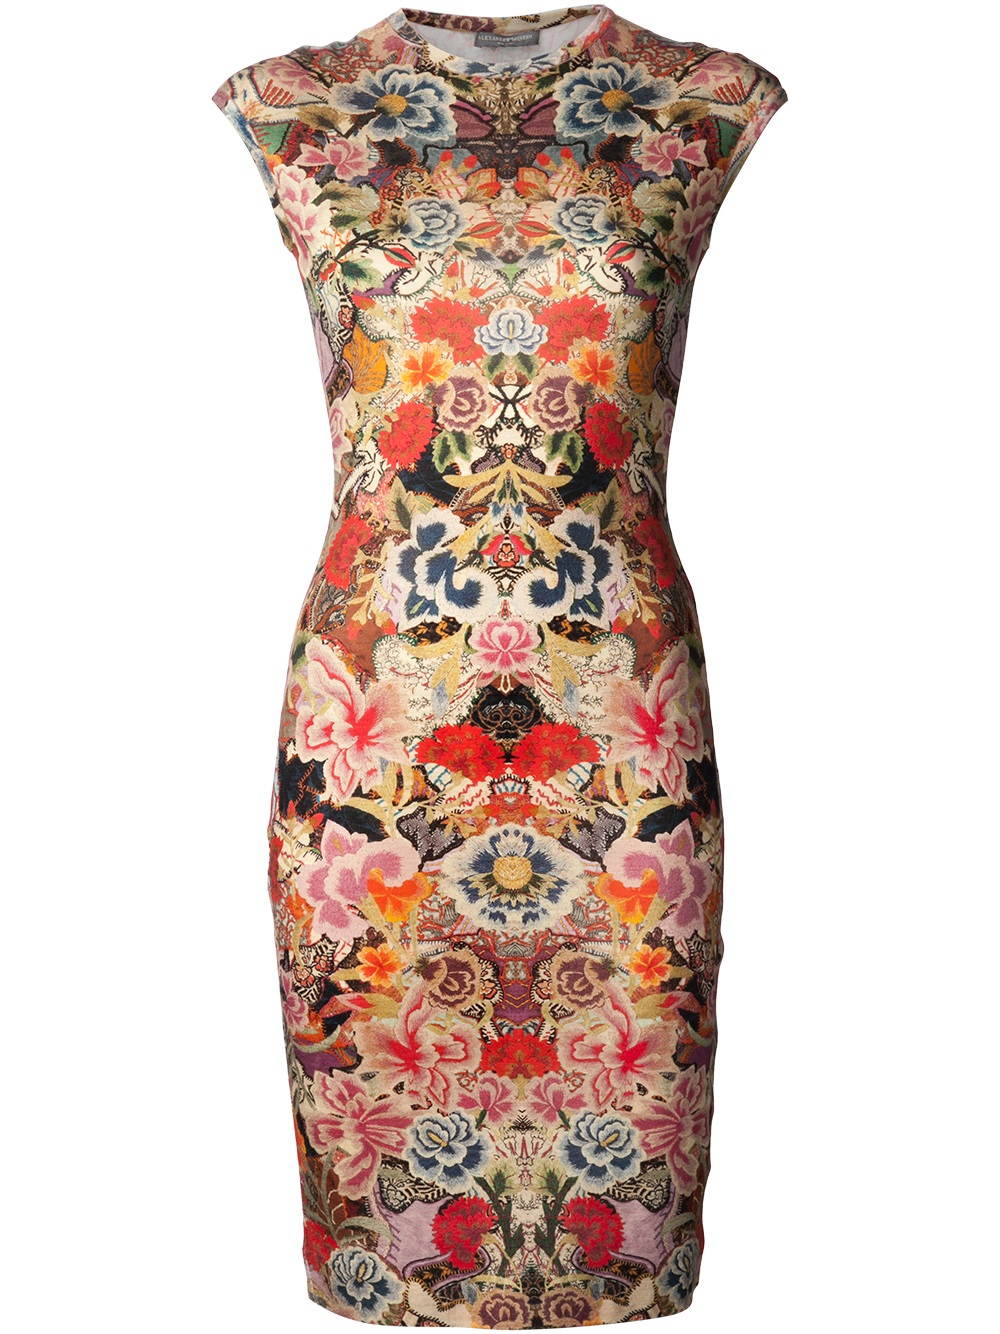 Lyst - Alexander Mcqueen Floral Print Dress